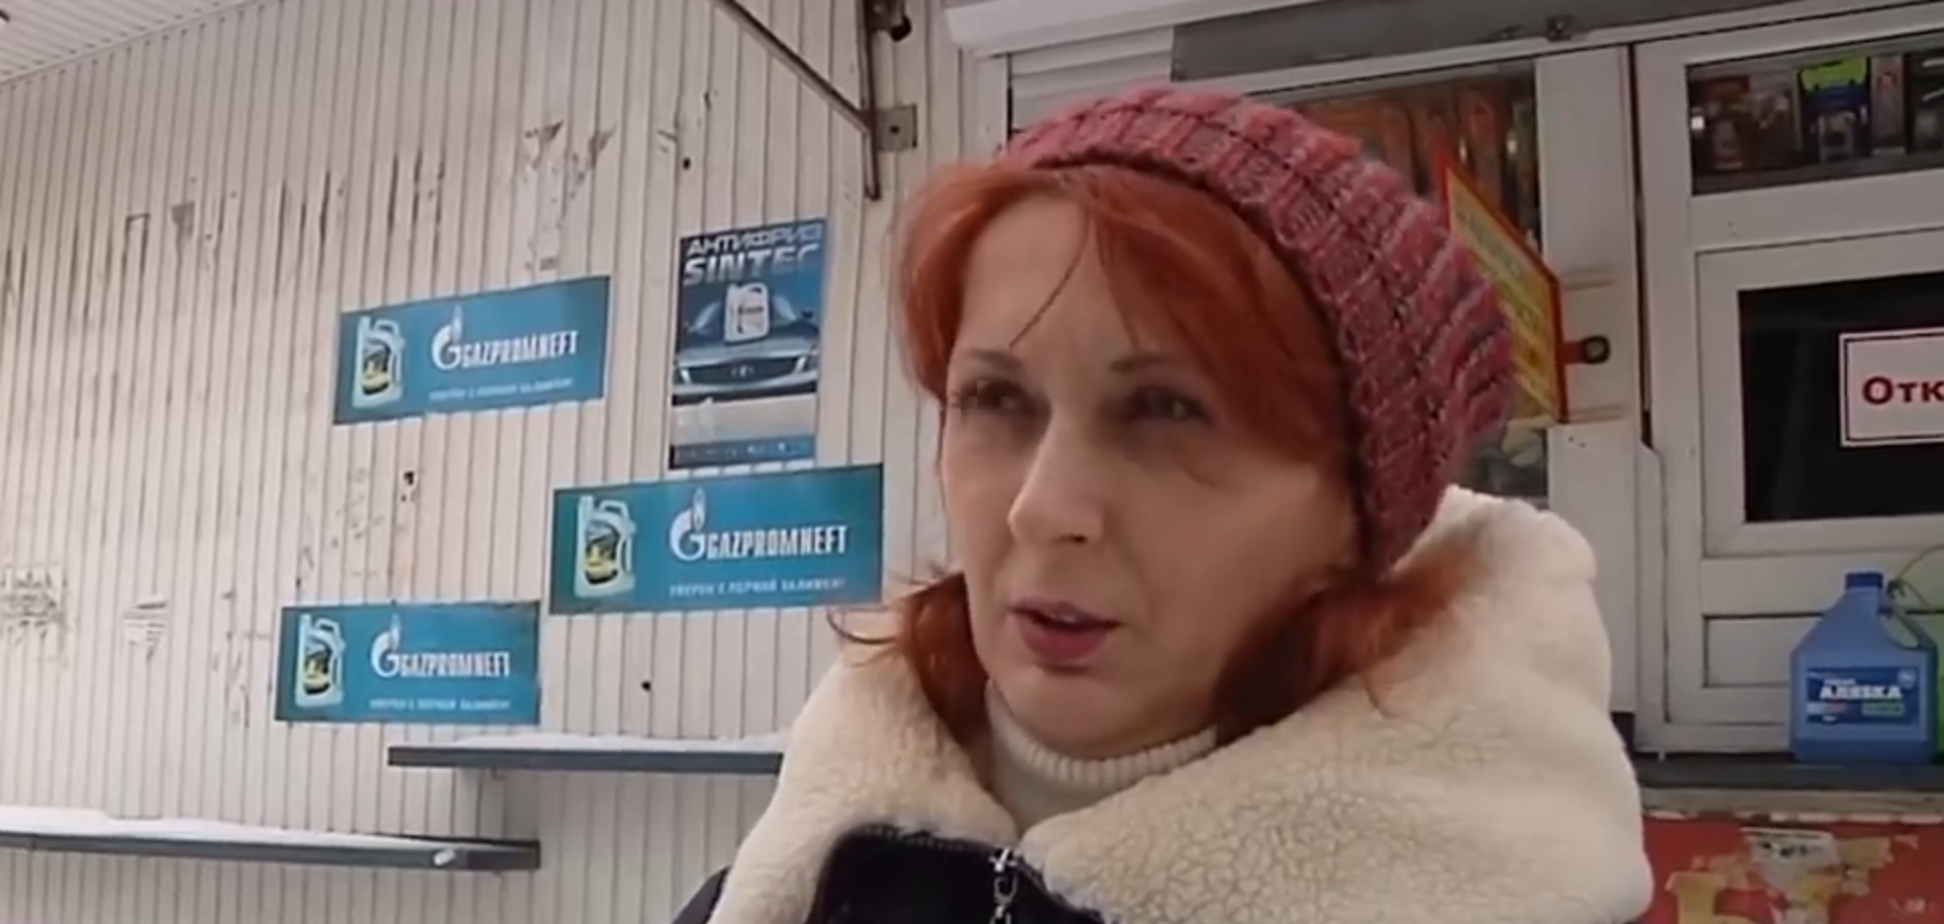 'Привыкли к качеству': в оккупированном Луганске отдали предпочтение украинским товарам